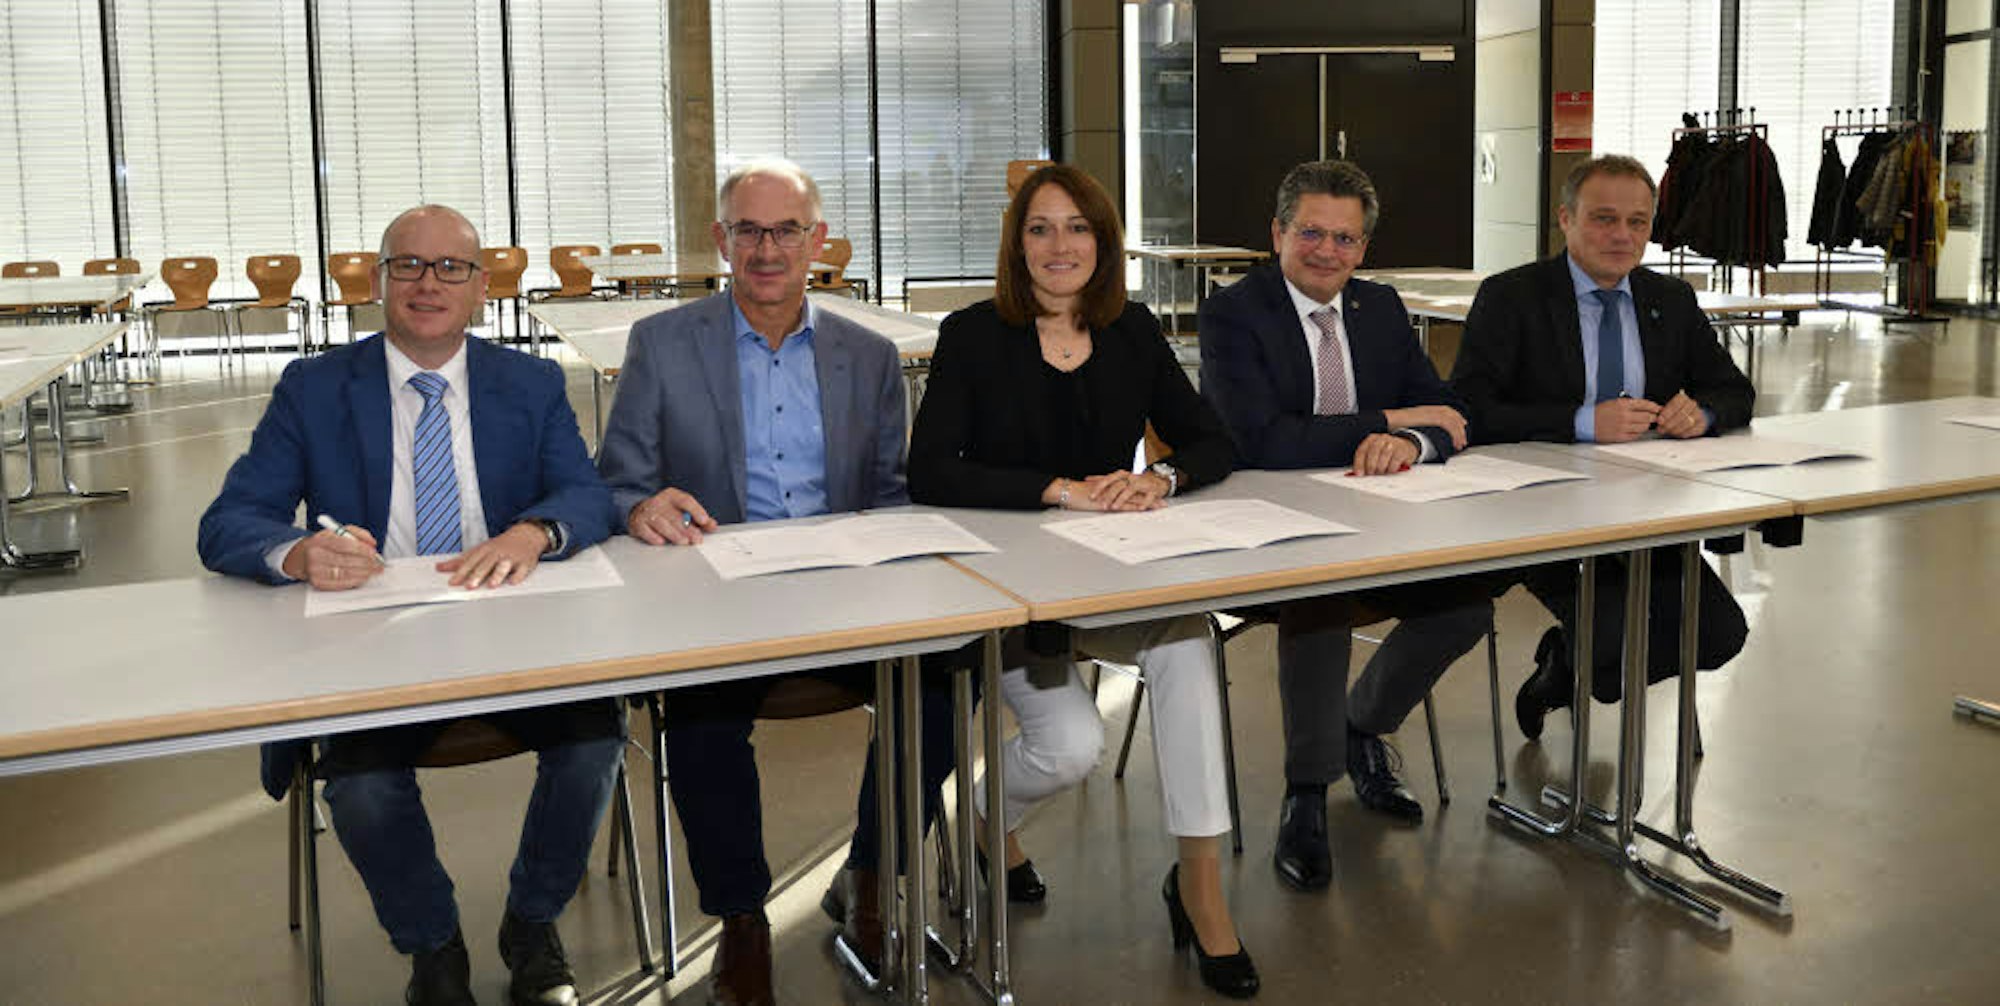 Unterzeichneten die Charta: Die Bürgermeister (v.r.) Jörg Weigt (Overath), Klaus Pipke (Hennef), Nicole Sander (Neunkirchen-Seelscheid), Norbert Büscher (Much) und Mario Loskill (Ruppichteroth).